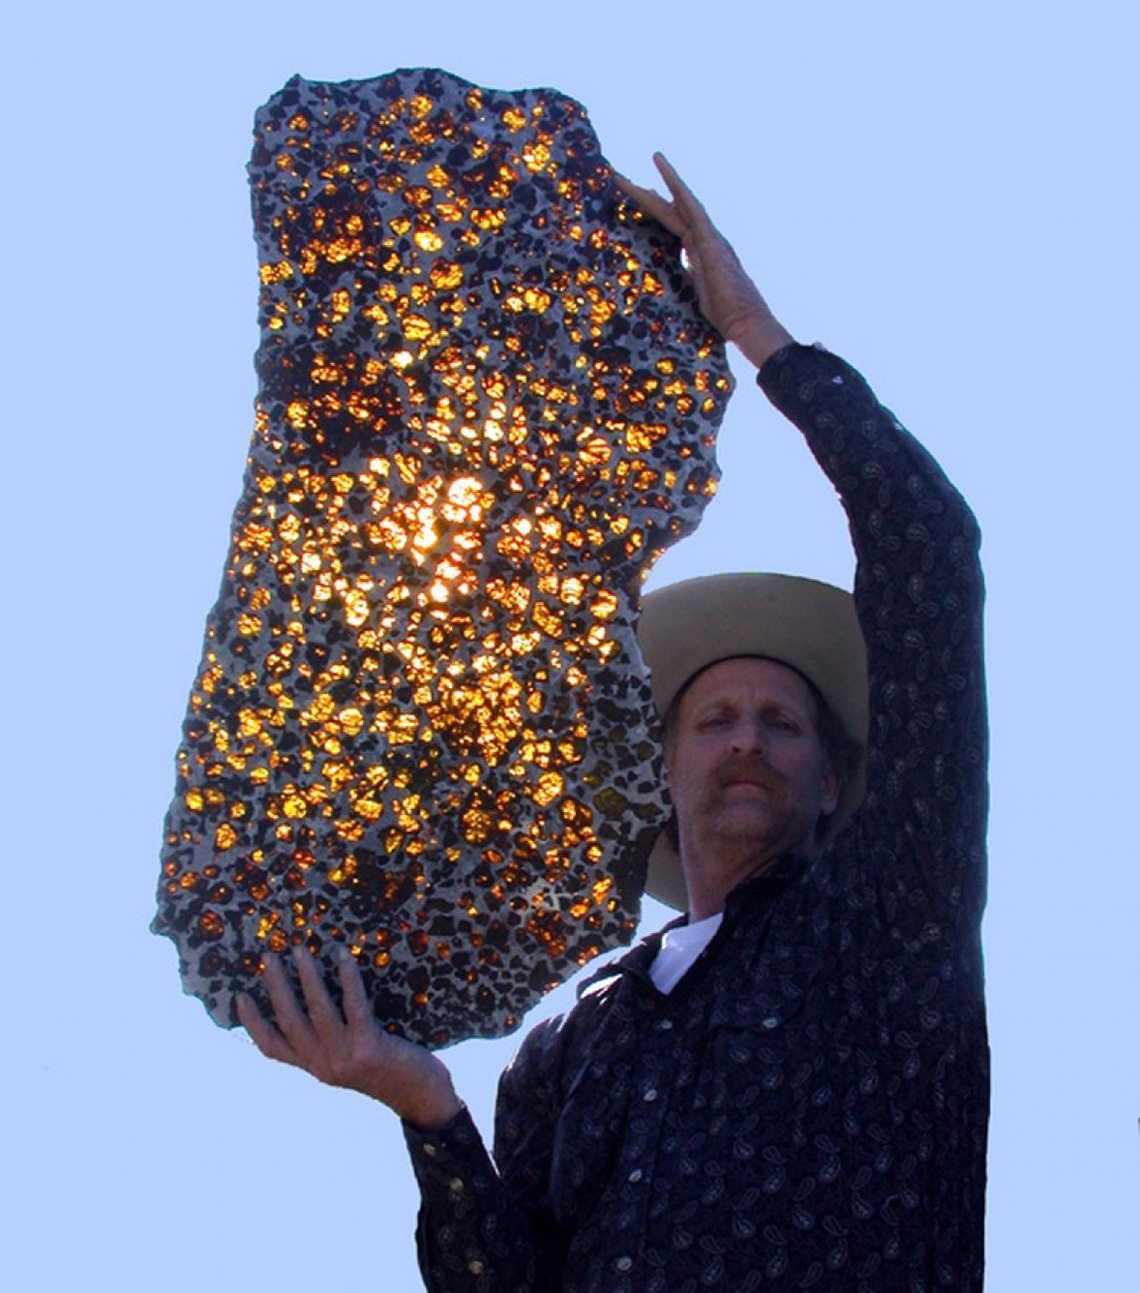 Качество жёлто-зелёных кристаллов оливина на Фукане настолько высокое, что они могут быть классифицированы как драгоценные камни.